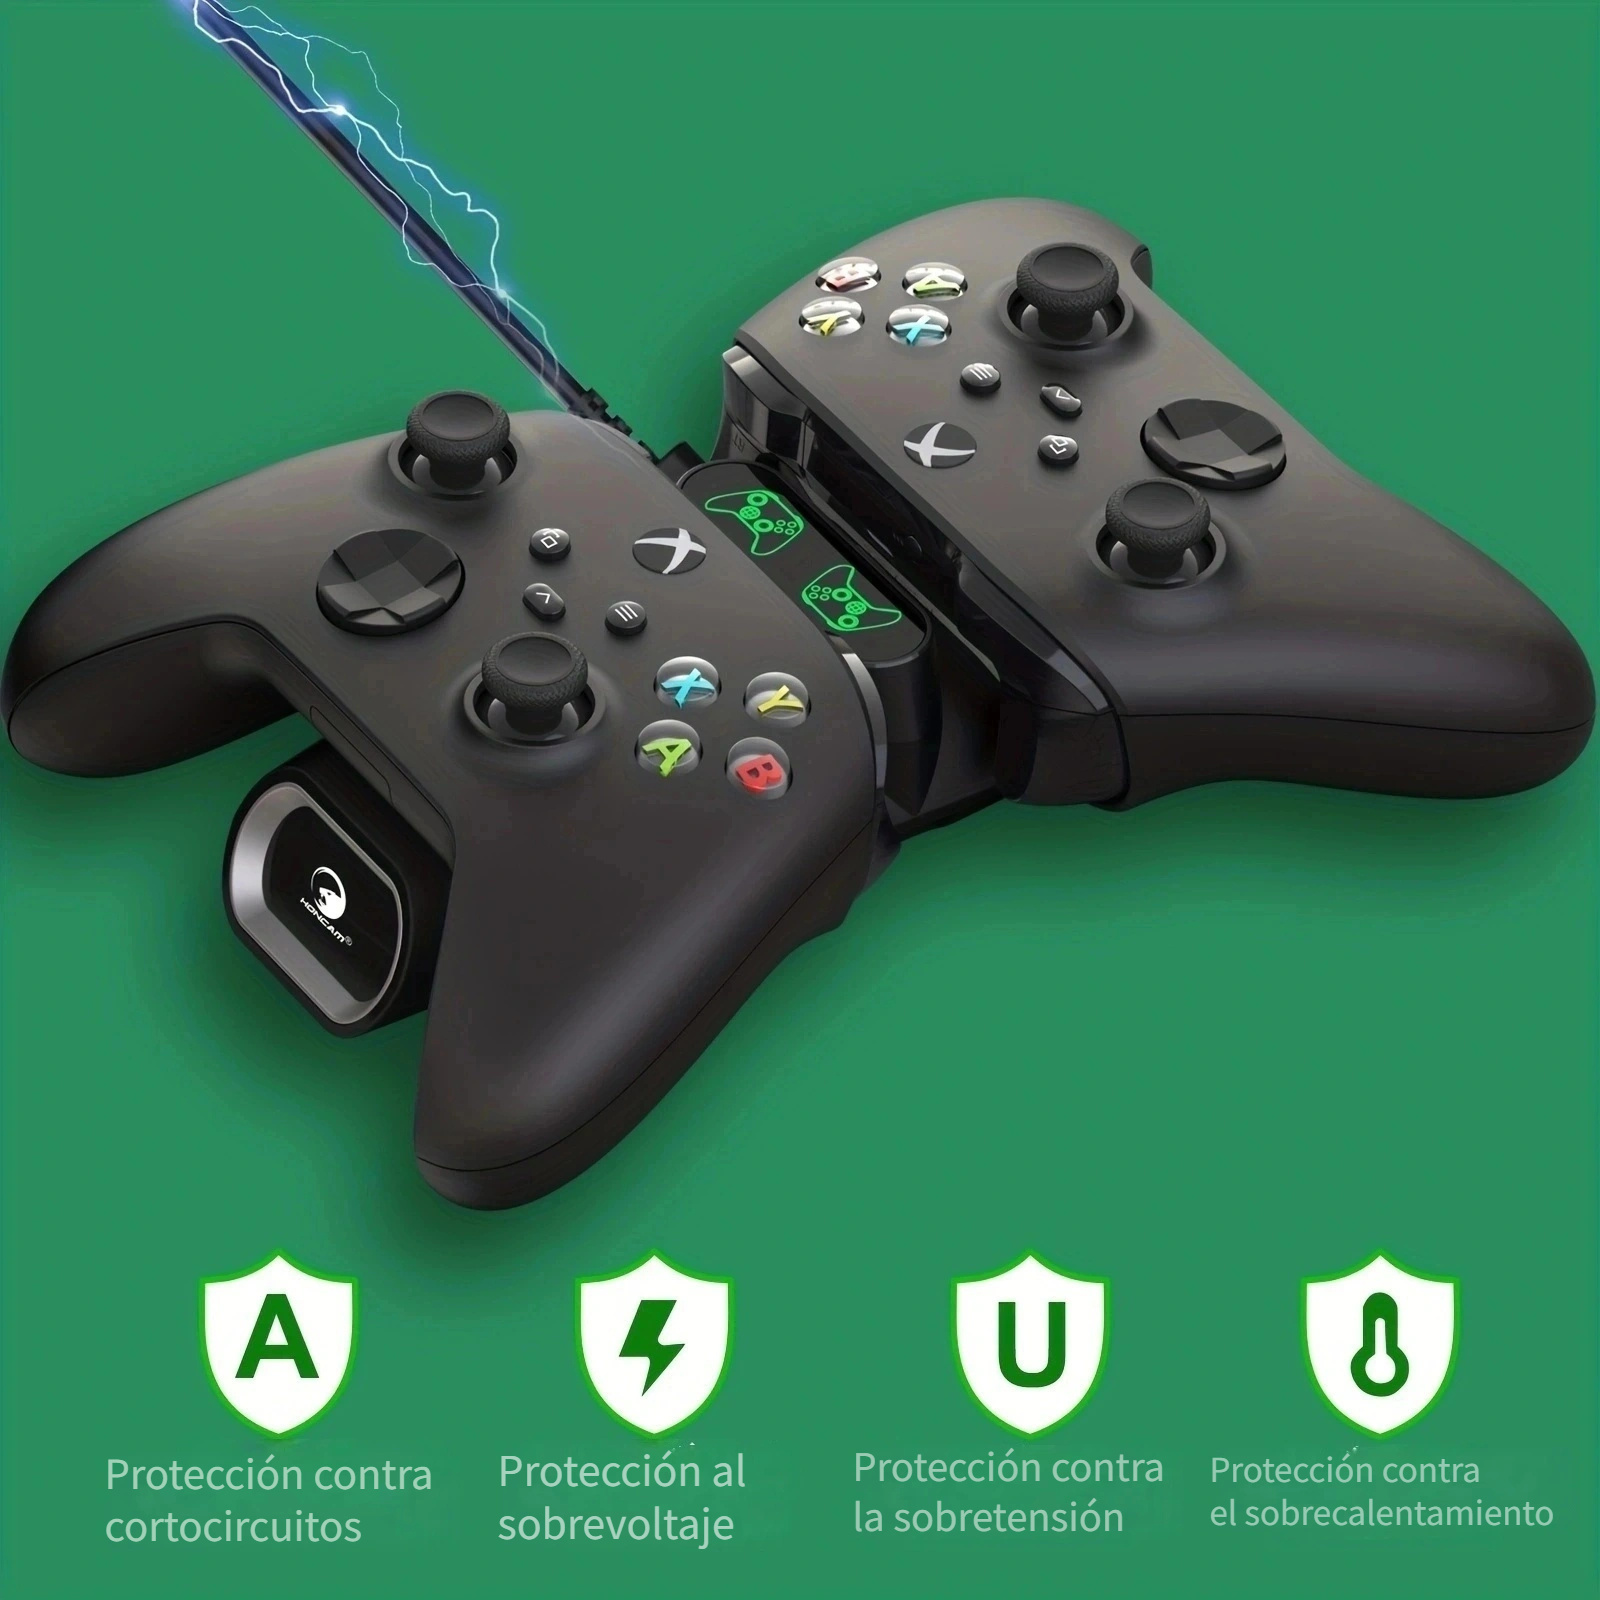  Cable de alimentación de CA compatible con Sony PS4 Pro, Xbox  360 Slim, Xbox One, Xbox 360 E de repuesto : Videojuegos